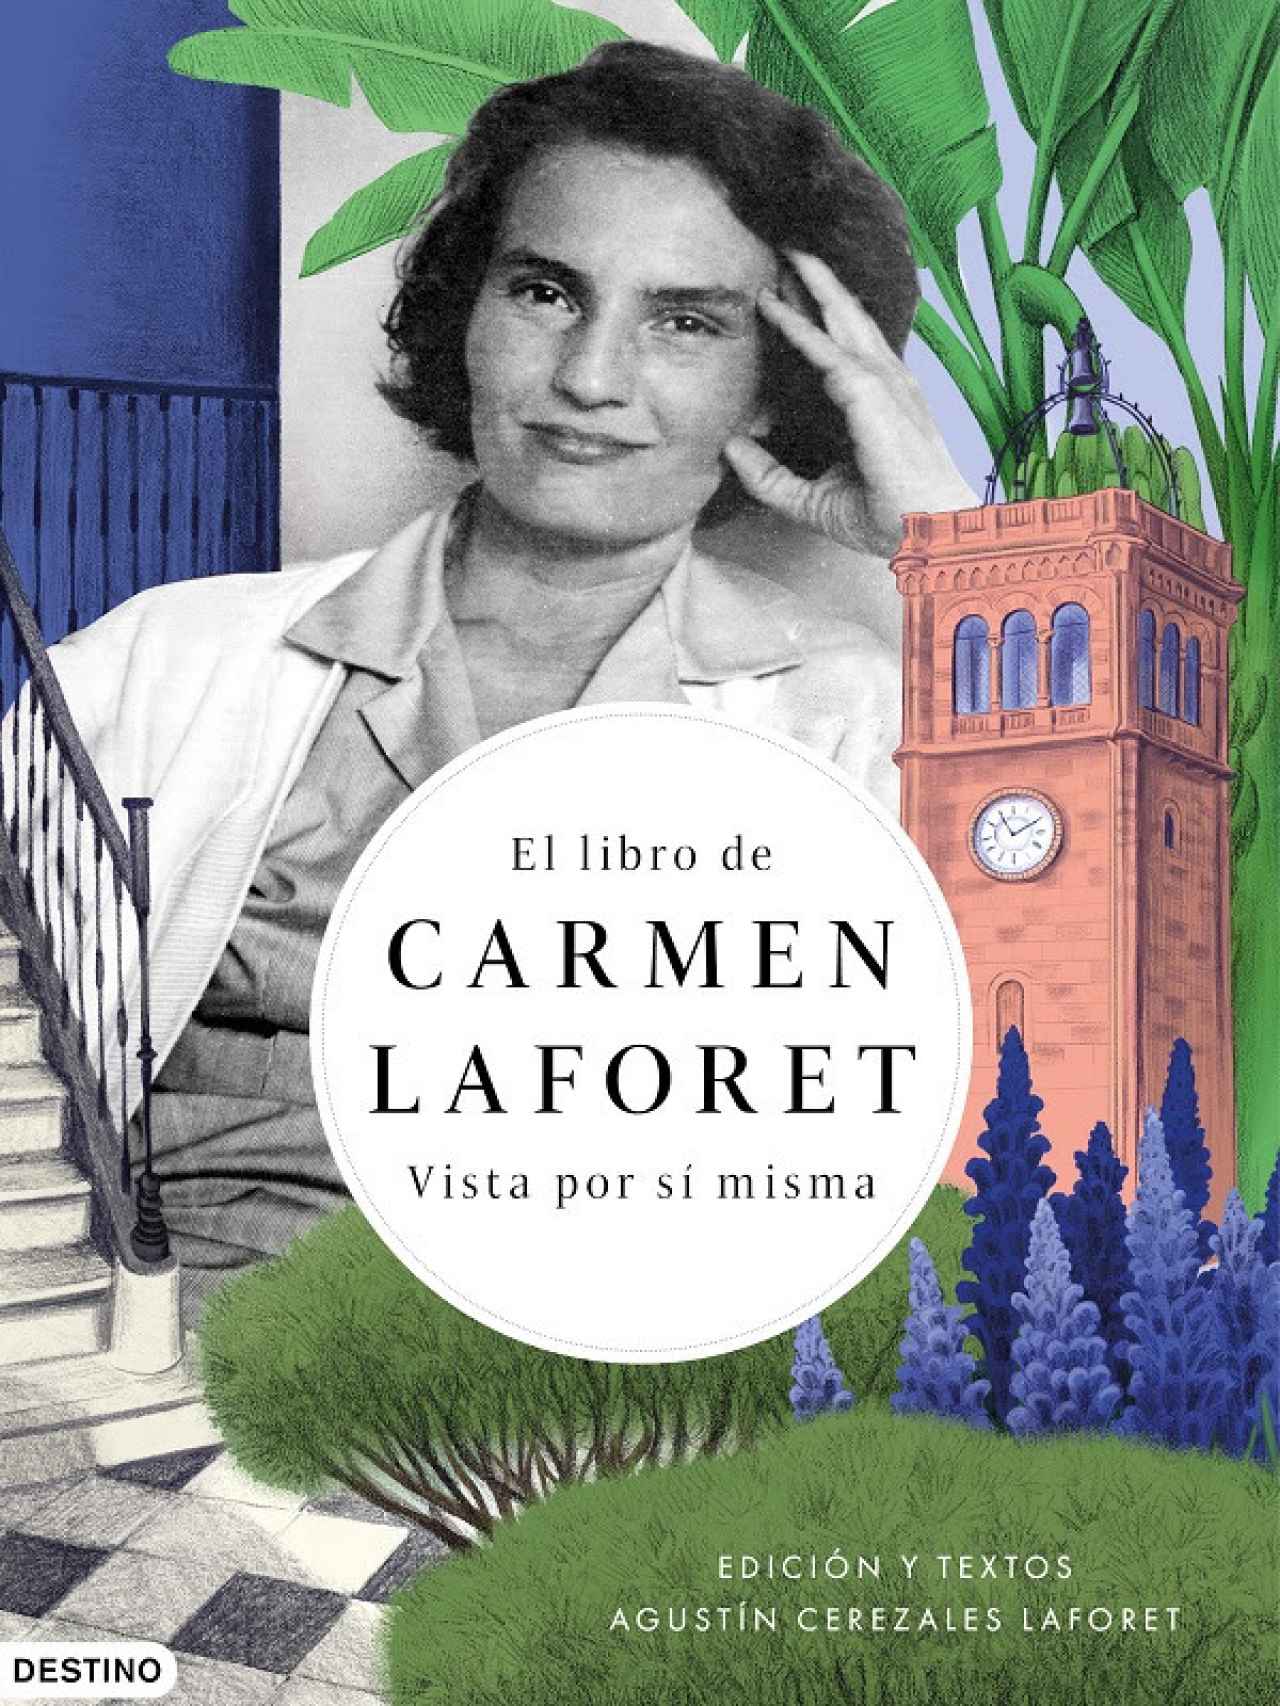 Portada de 'El libro de Carmen Laforet. Vista por sí misma', de su hijo Agustín Cerezales Laforet.